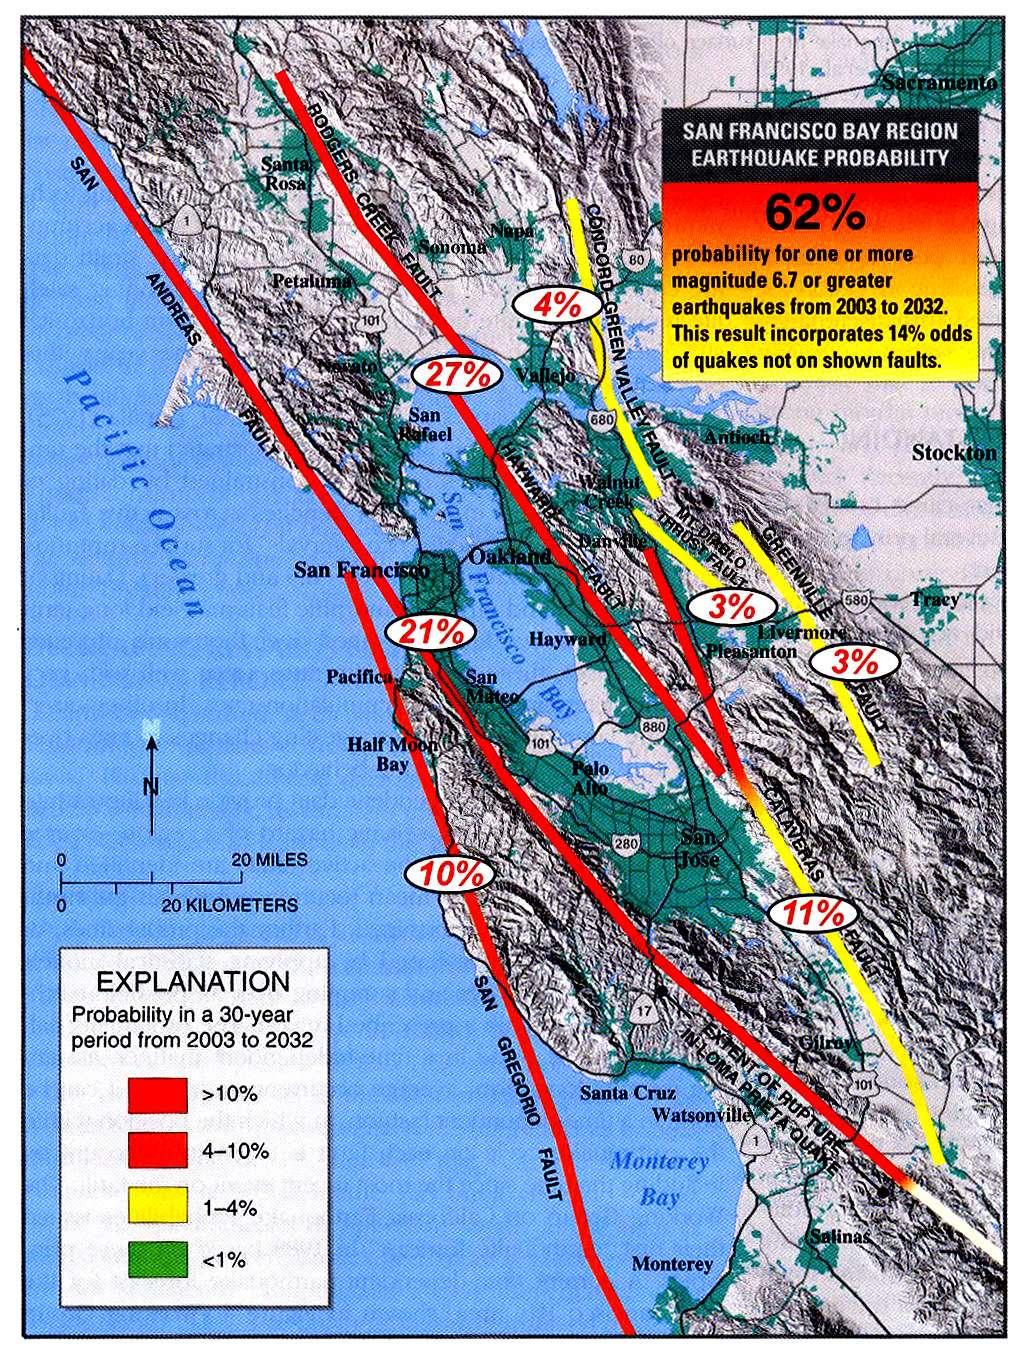 Probabilità di uno o più terremoti con M>6.